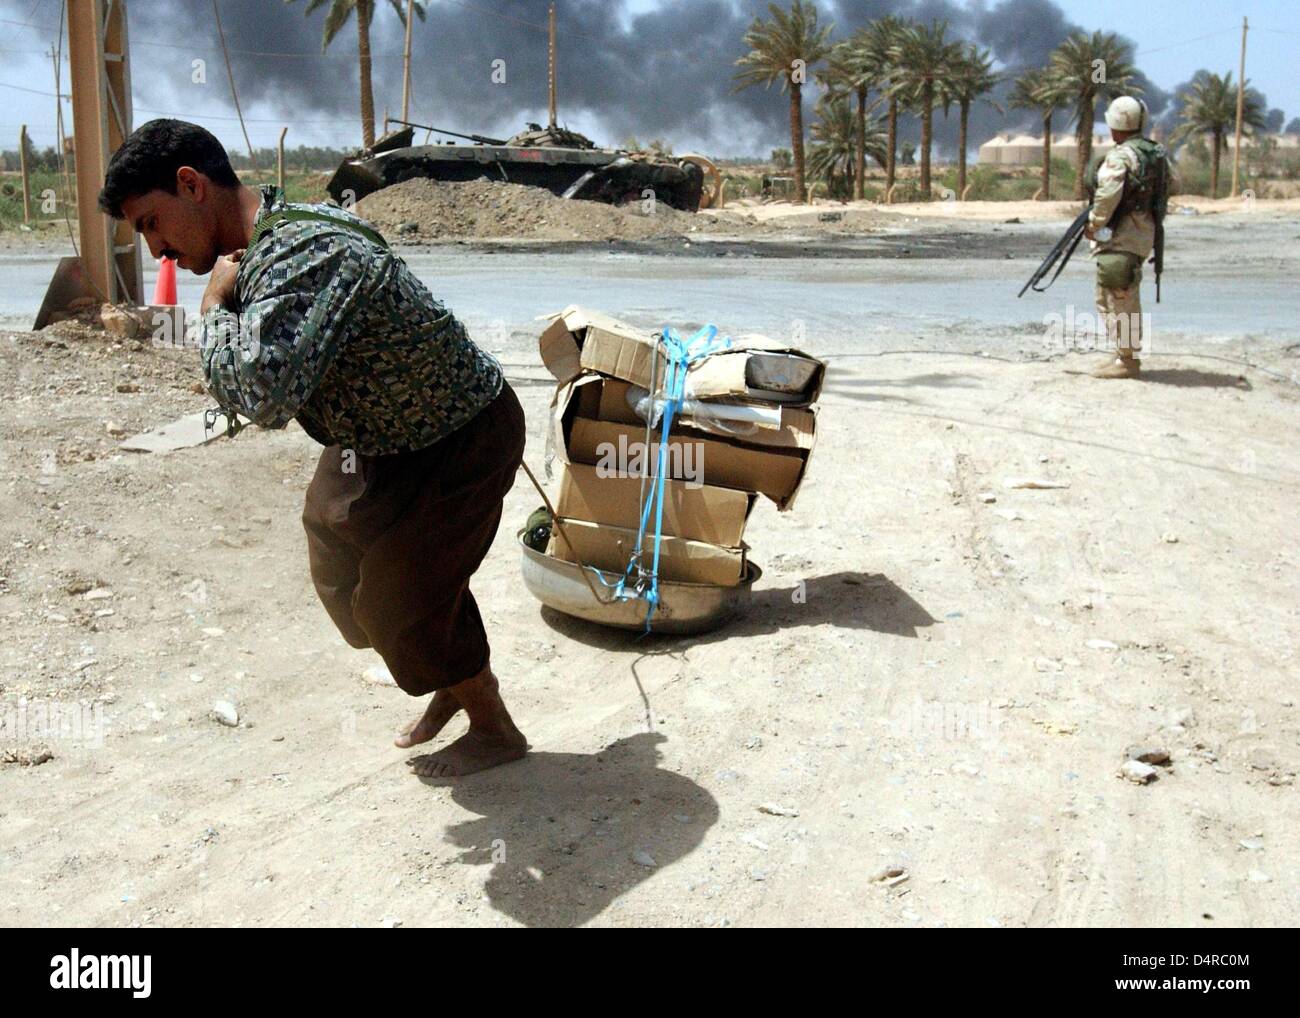 Un Irakien tire pillé les appareils ménagers au-delà d'un marine américain le 10 avril 2003 à Bagdad. Banque D'Images